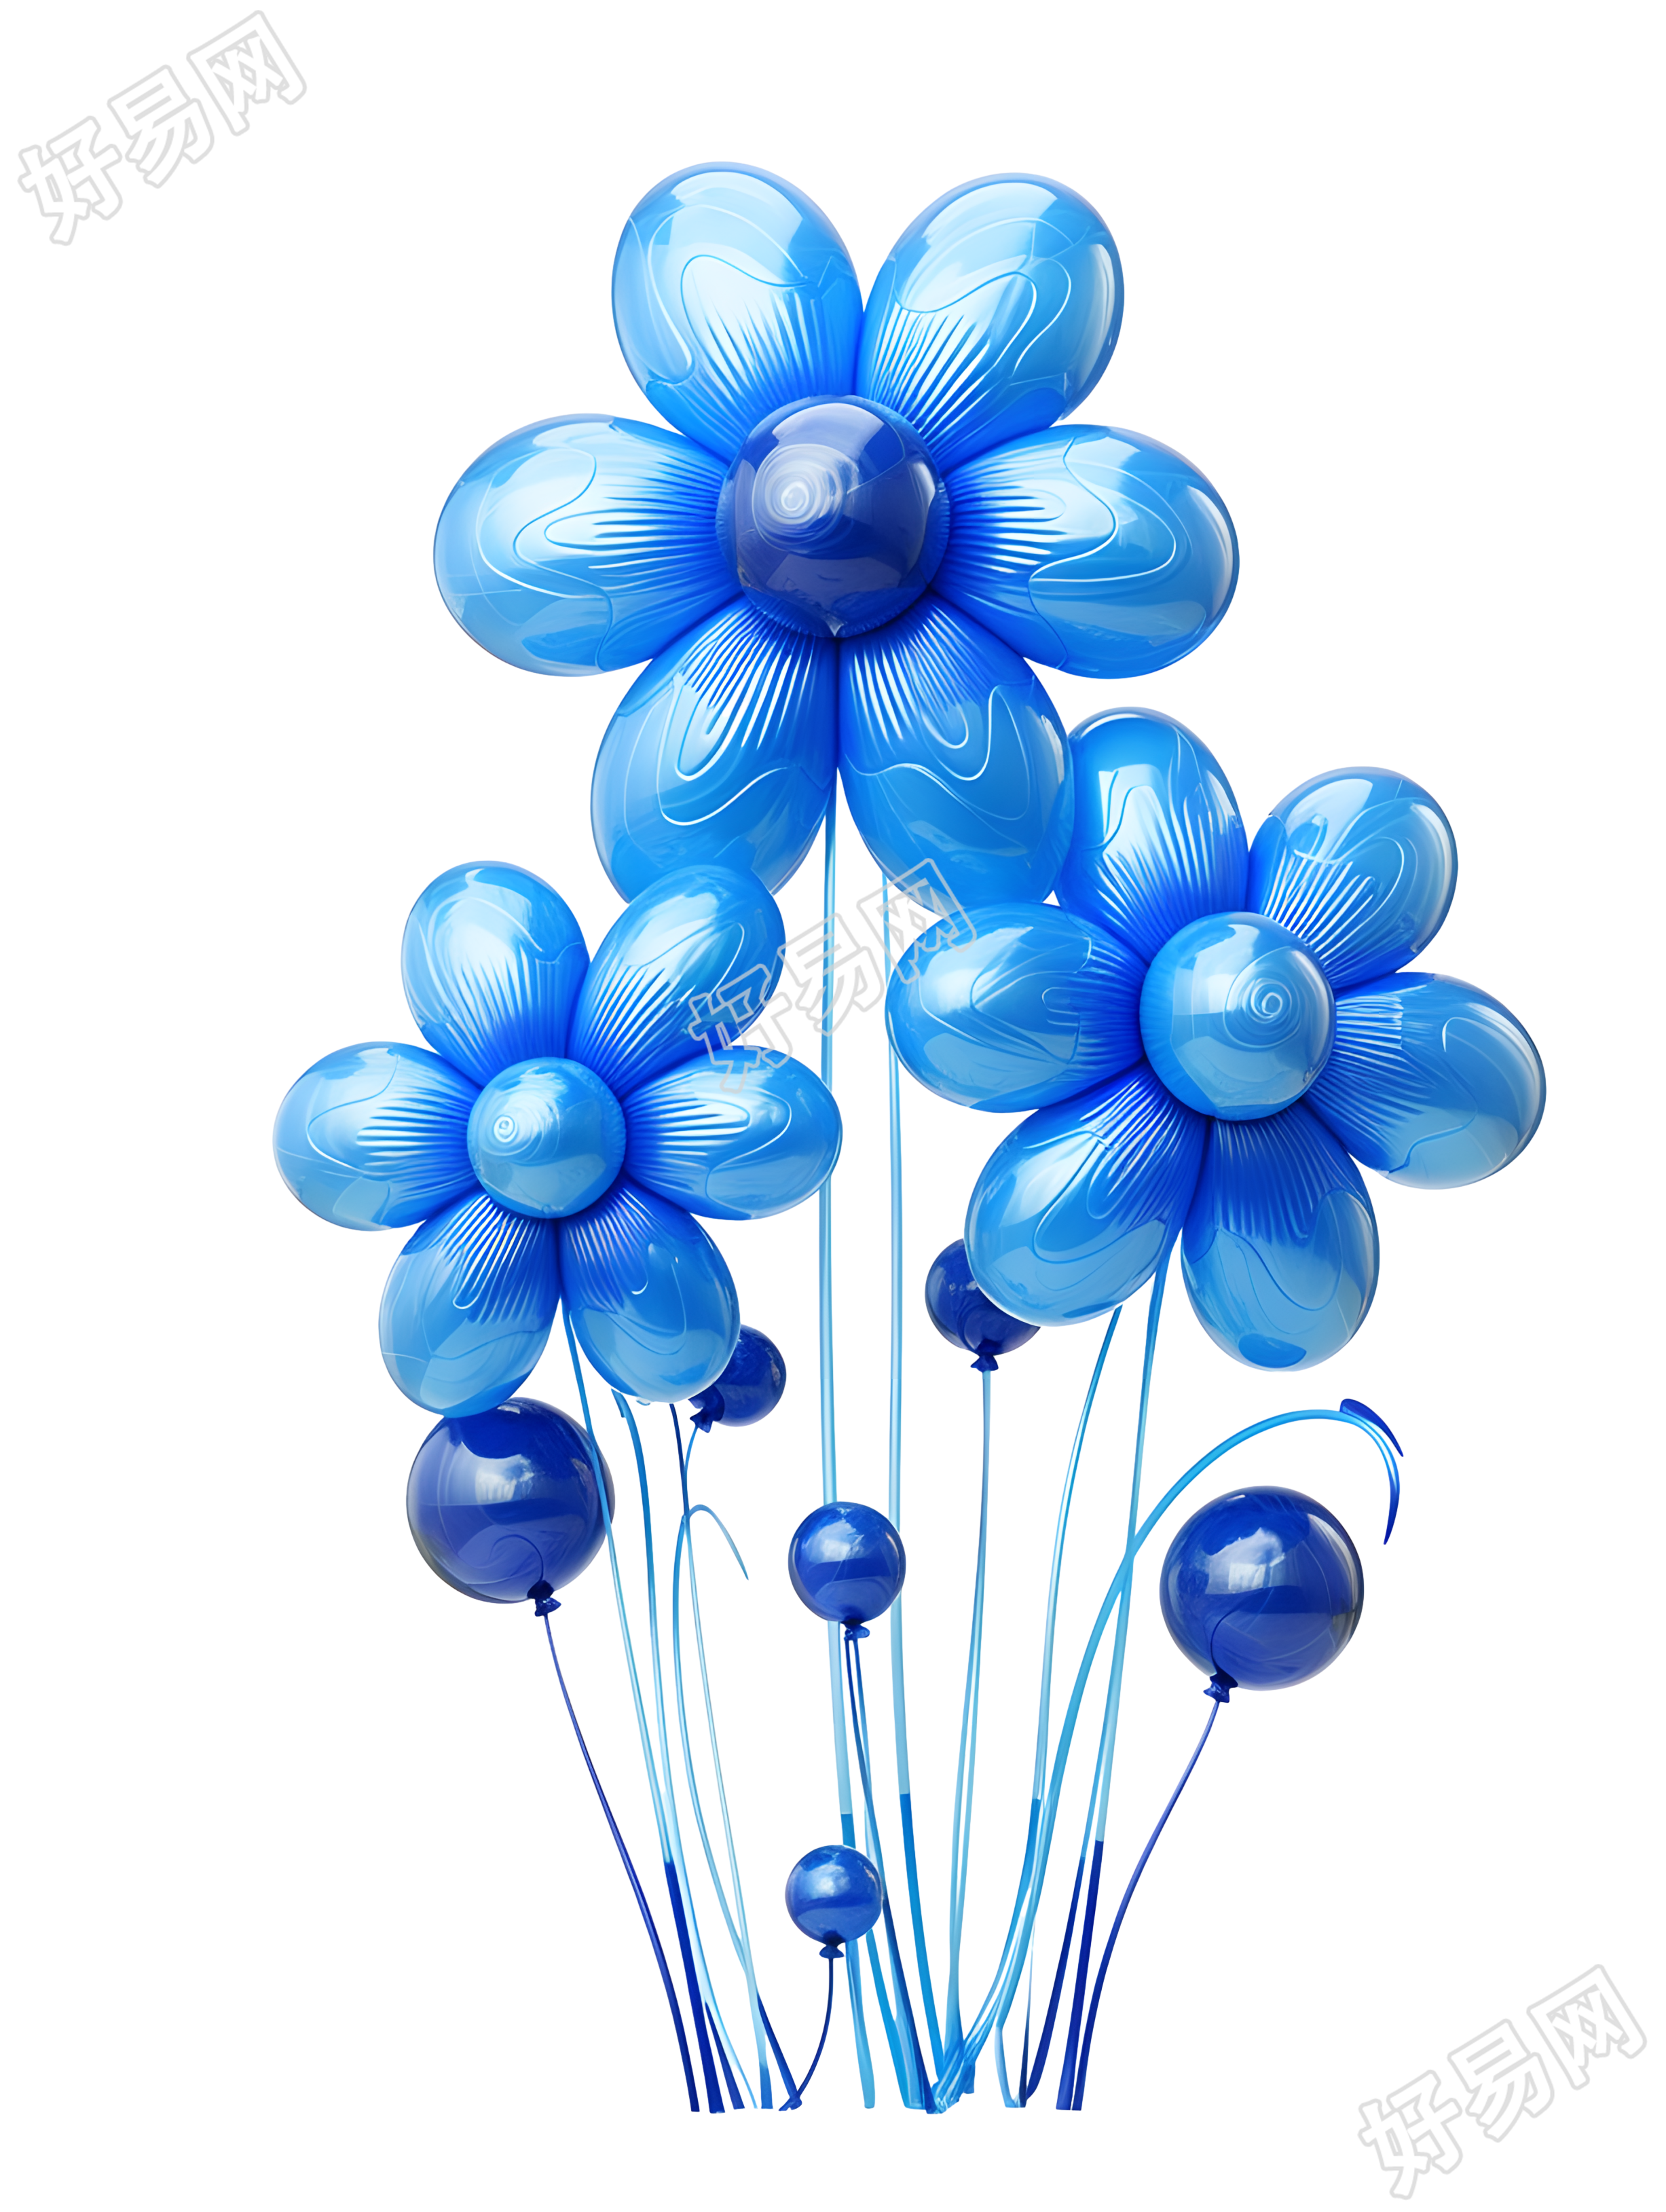 高清透明背景蓝色充气气球素材